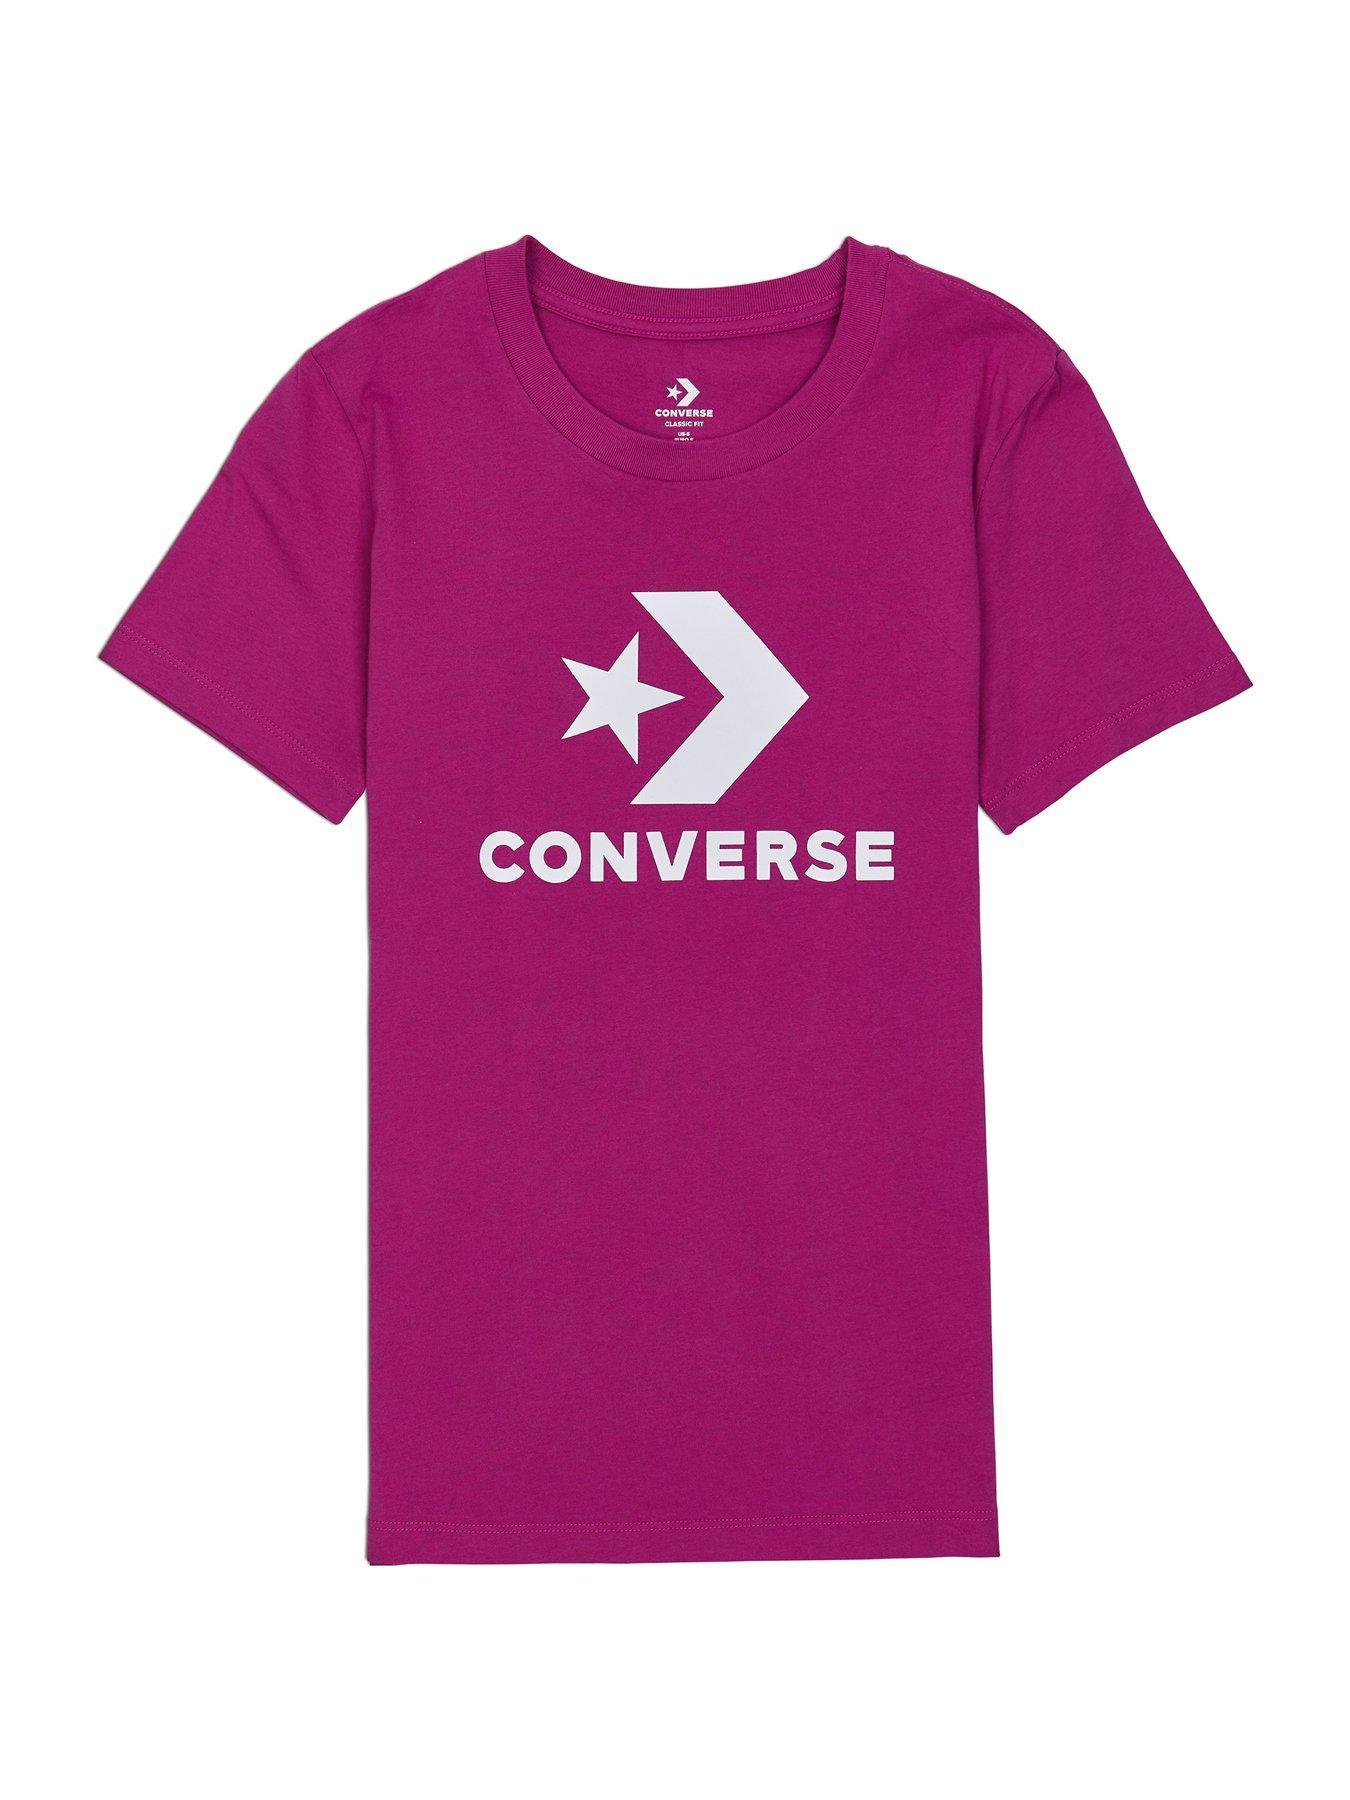 converse t shirts uk